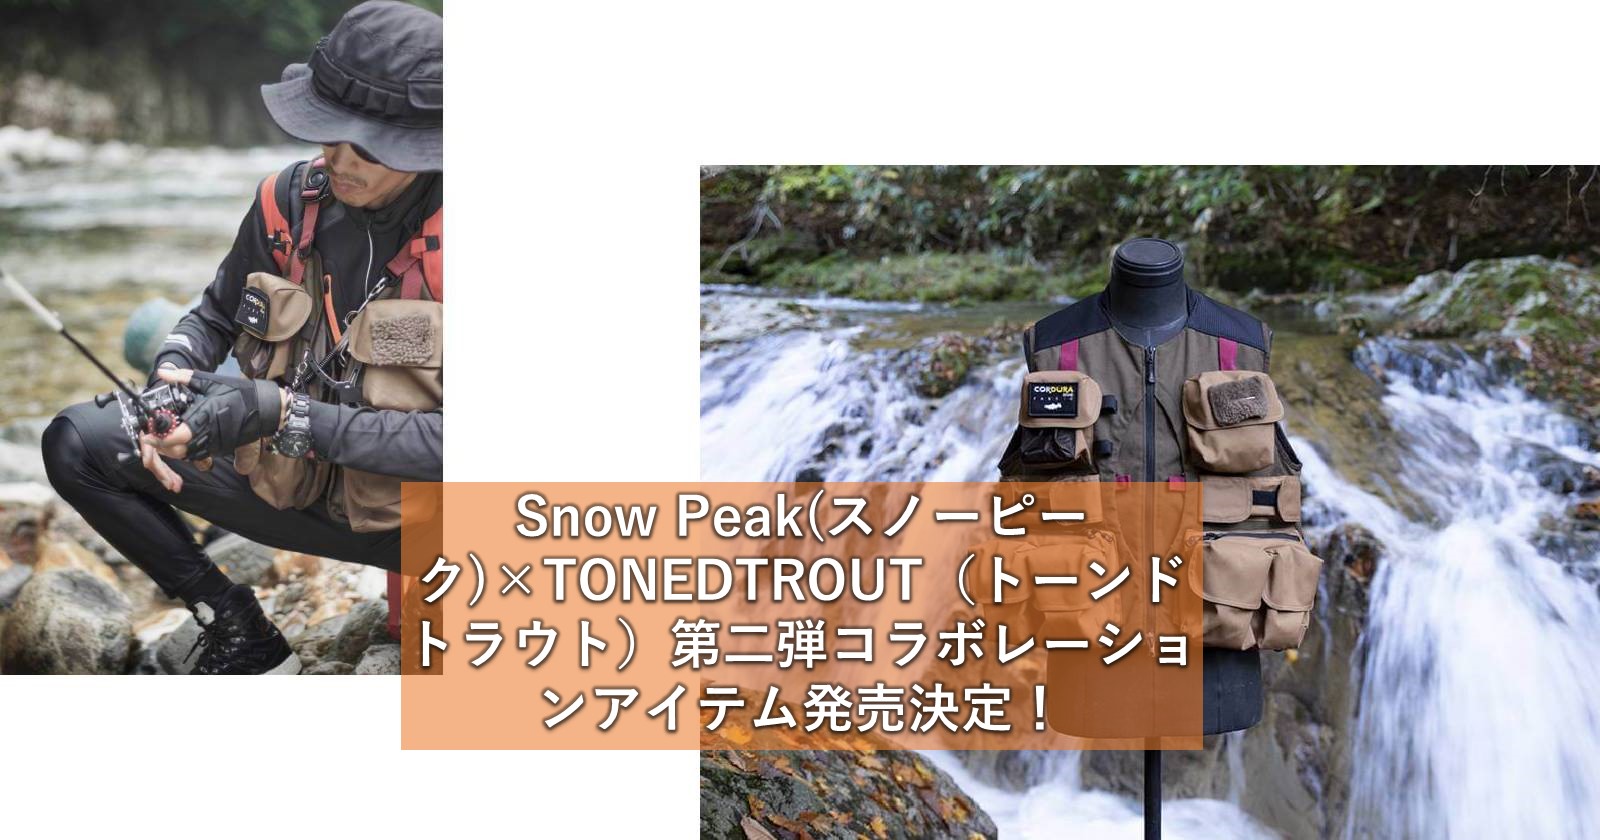 Snow Peak スノーピーク Tonedtrout トーンドトラウト 第二弾コラボレーションアイテム発売決定 キャンプ アウトドアのtakibi タキビ